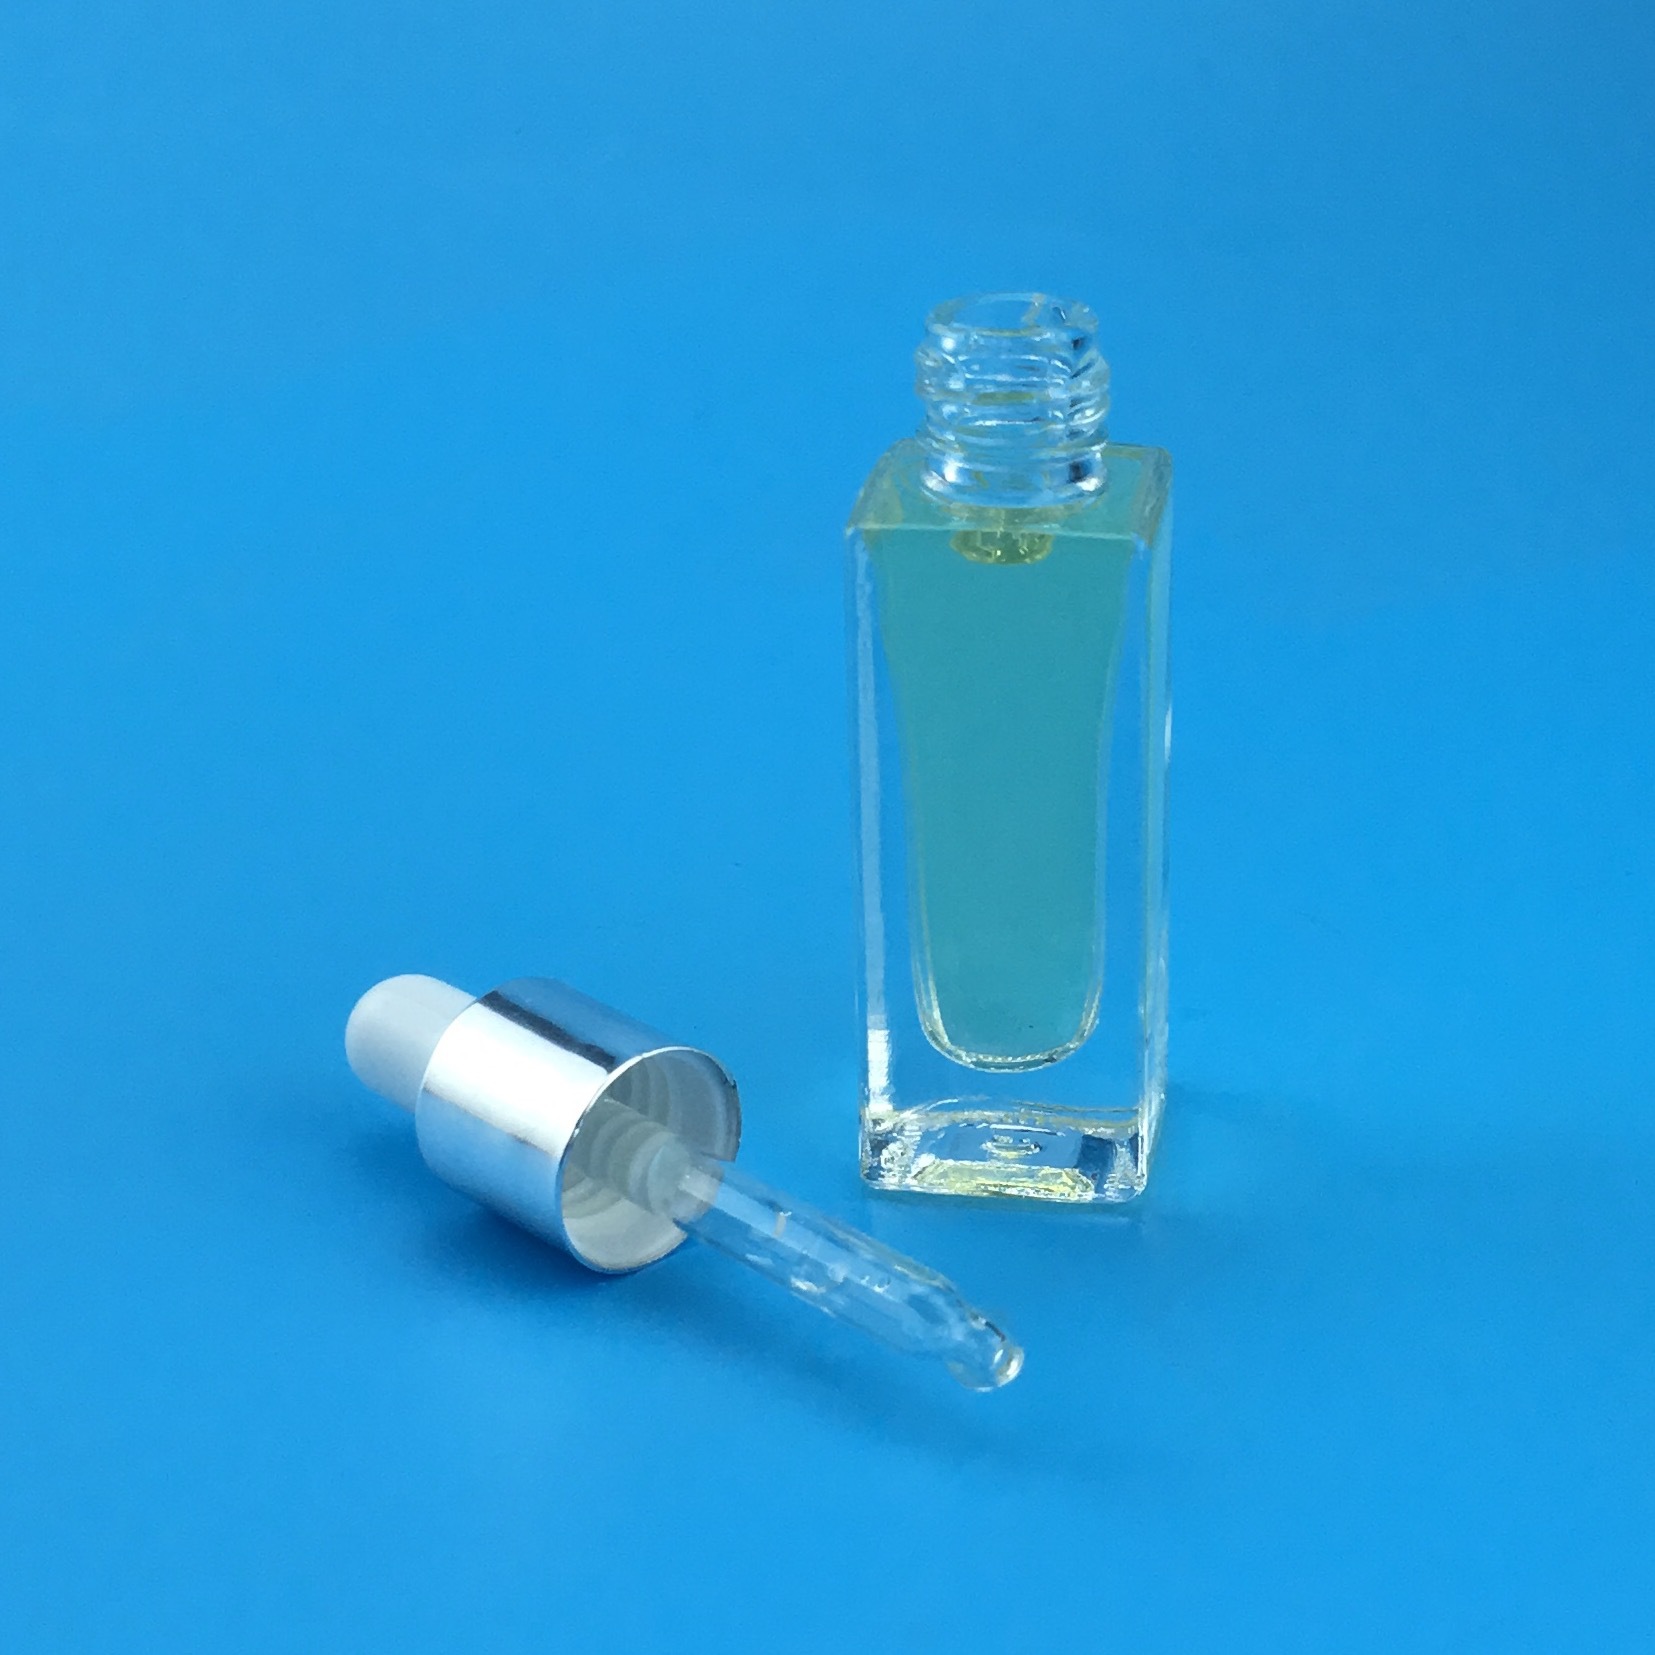 化妆品瓶 7ml玻璃瓶 滴管瓶 透明精油瓶 精华液瓶 试用分装瓶示例图4